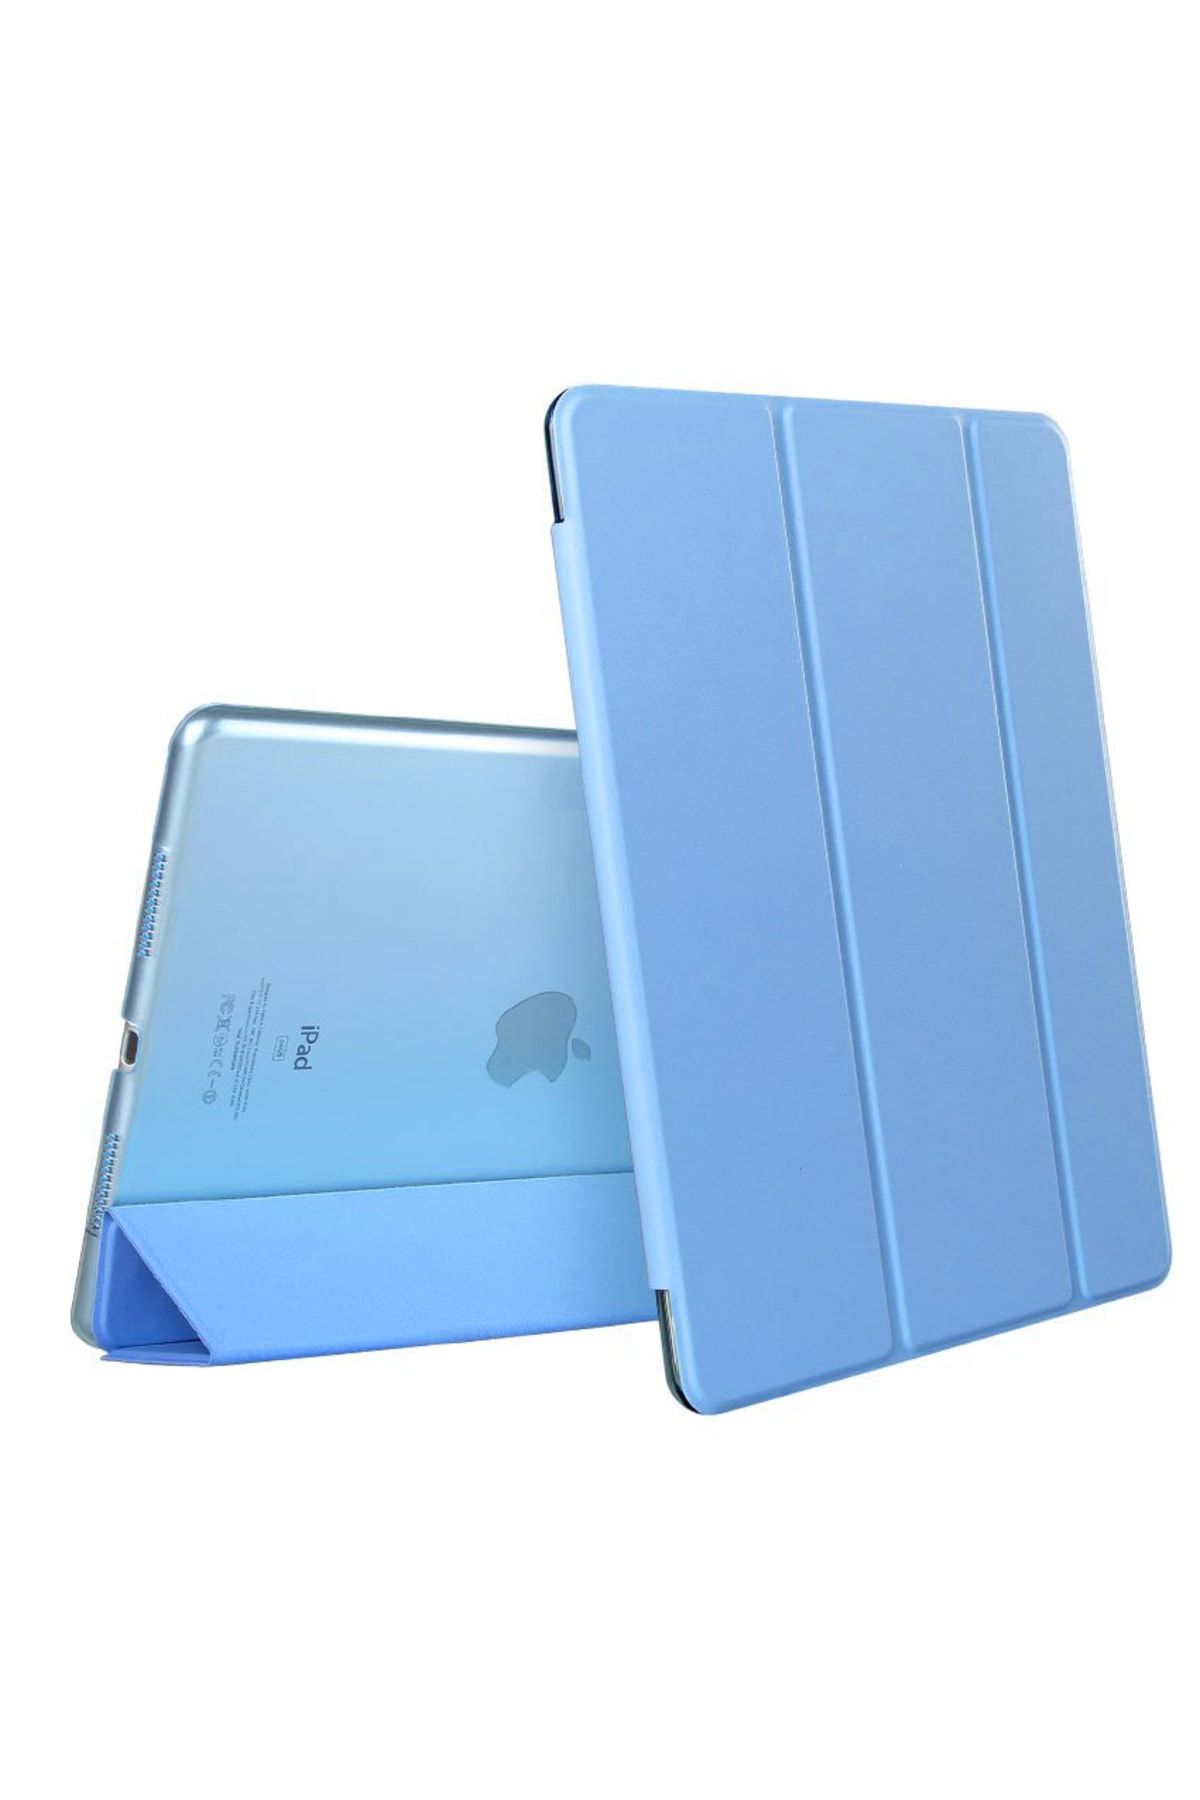 Microsonic Apple Ipad Air 3 10.5'' 2019 (A2152-a2123-a2153-a2154) Smart Case Ve Arka Kılıf Mavi